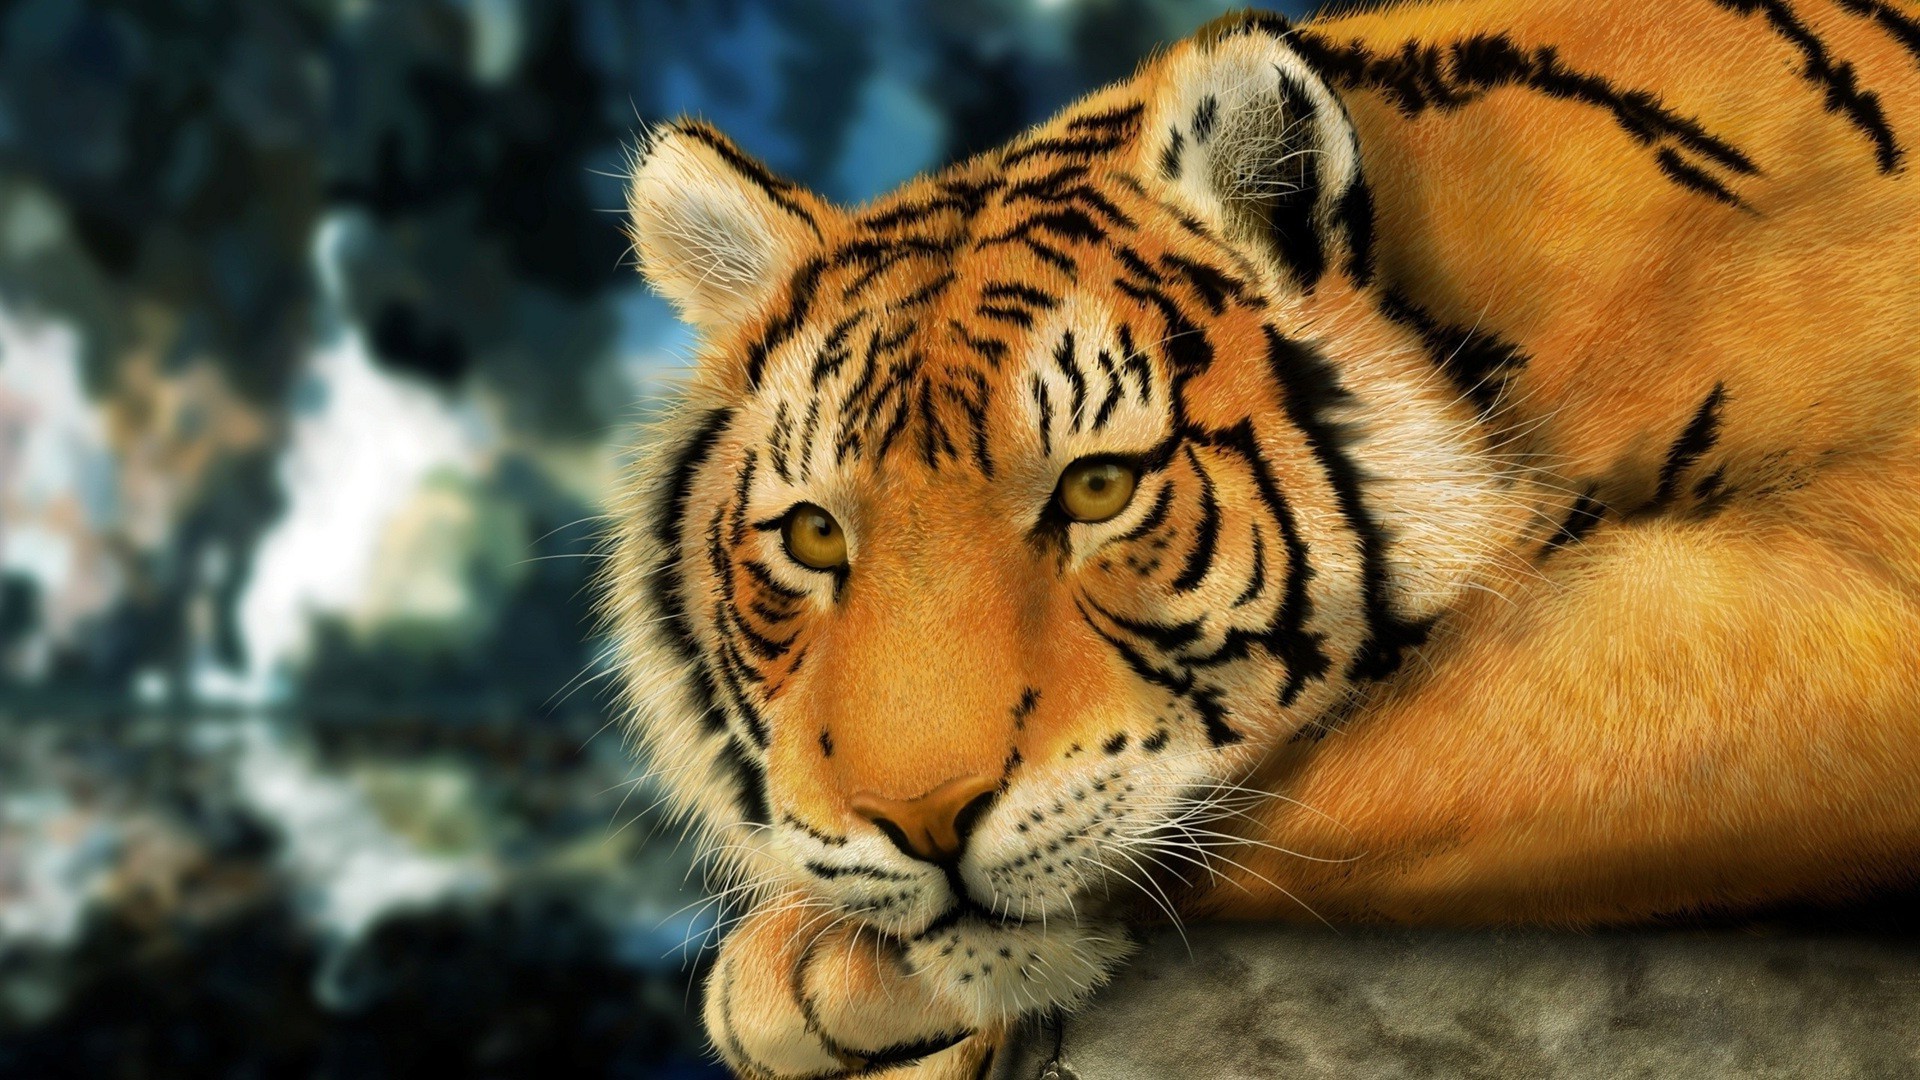 тигры тигр дикой природы кошка млекопитающее зоопарк животное хищник полоса агрессии портрет охотник опасность глаз мех дикий глядя природа злой джунгли